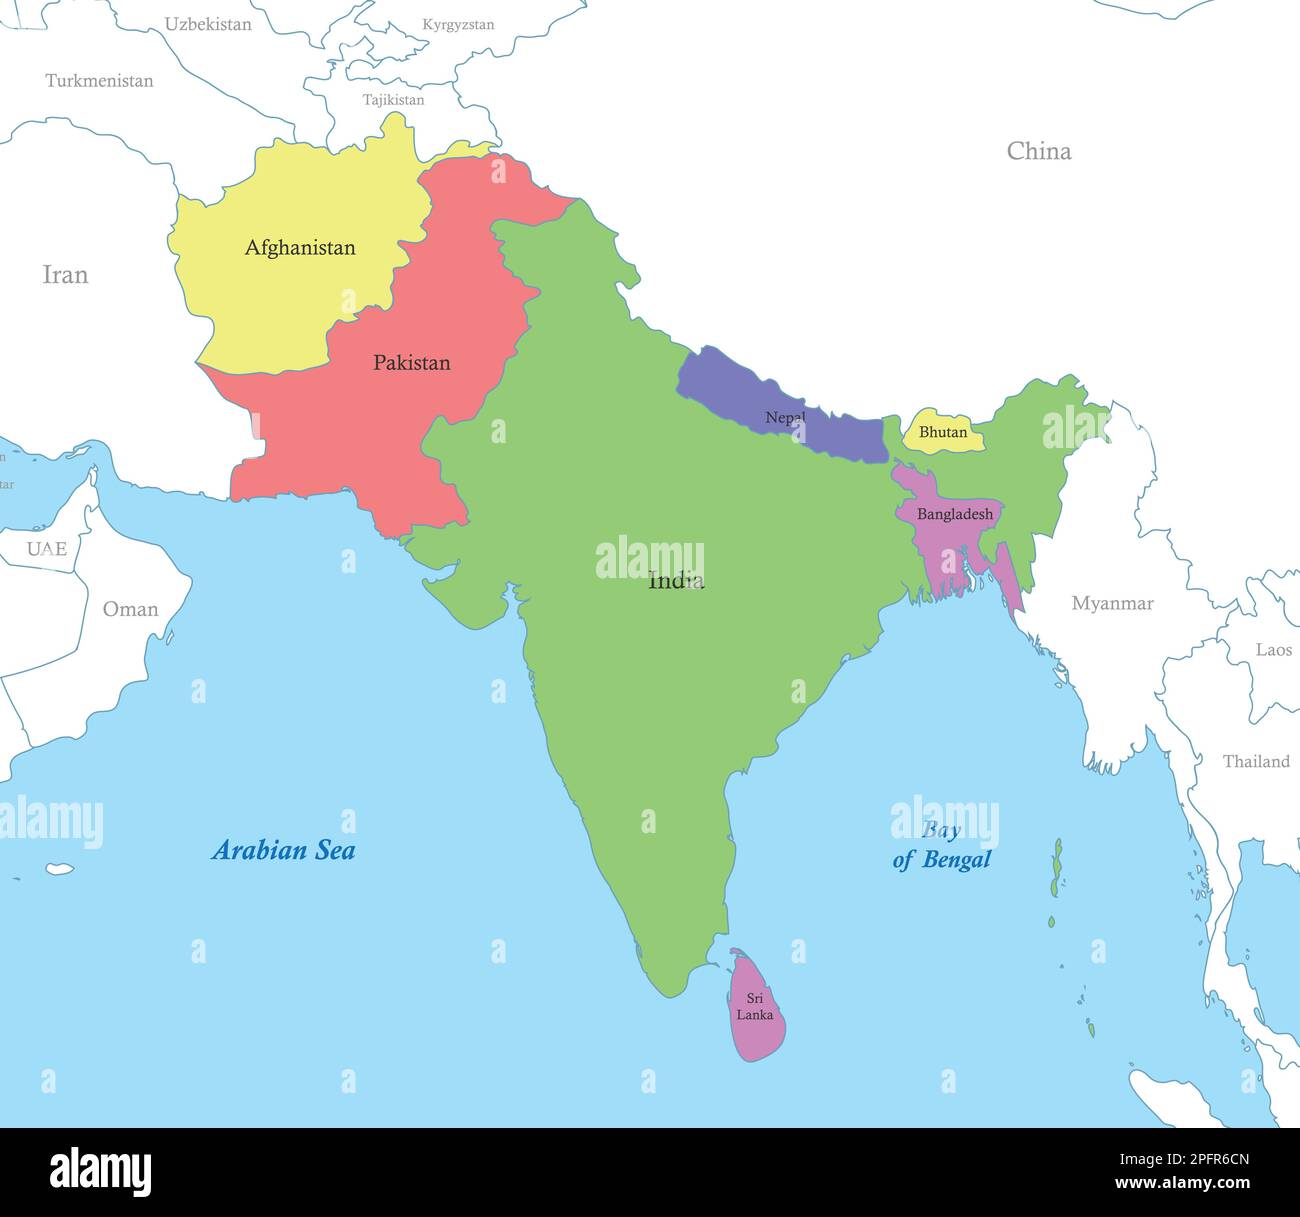 Mappa a colori politica dell'Asia meridionale con i confini degli stati. Illustrazione Vettoriale